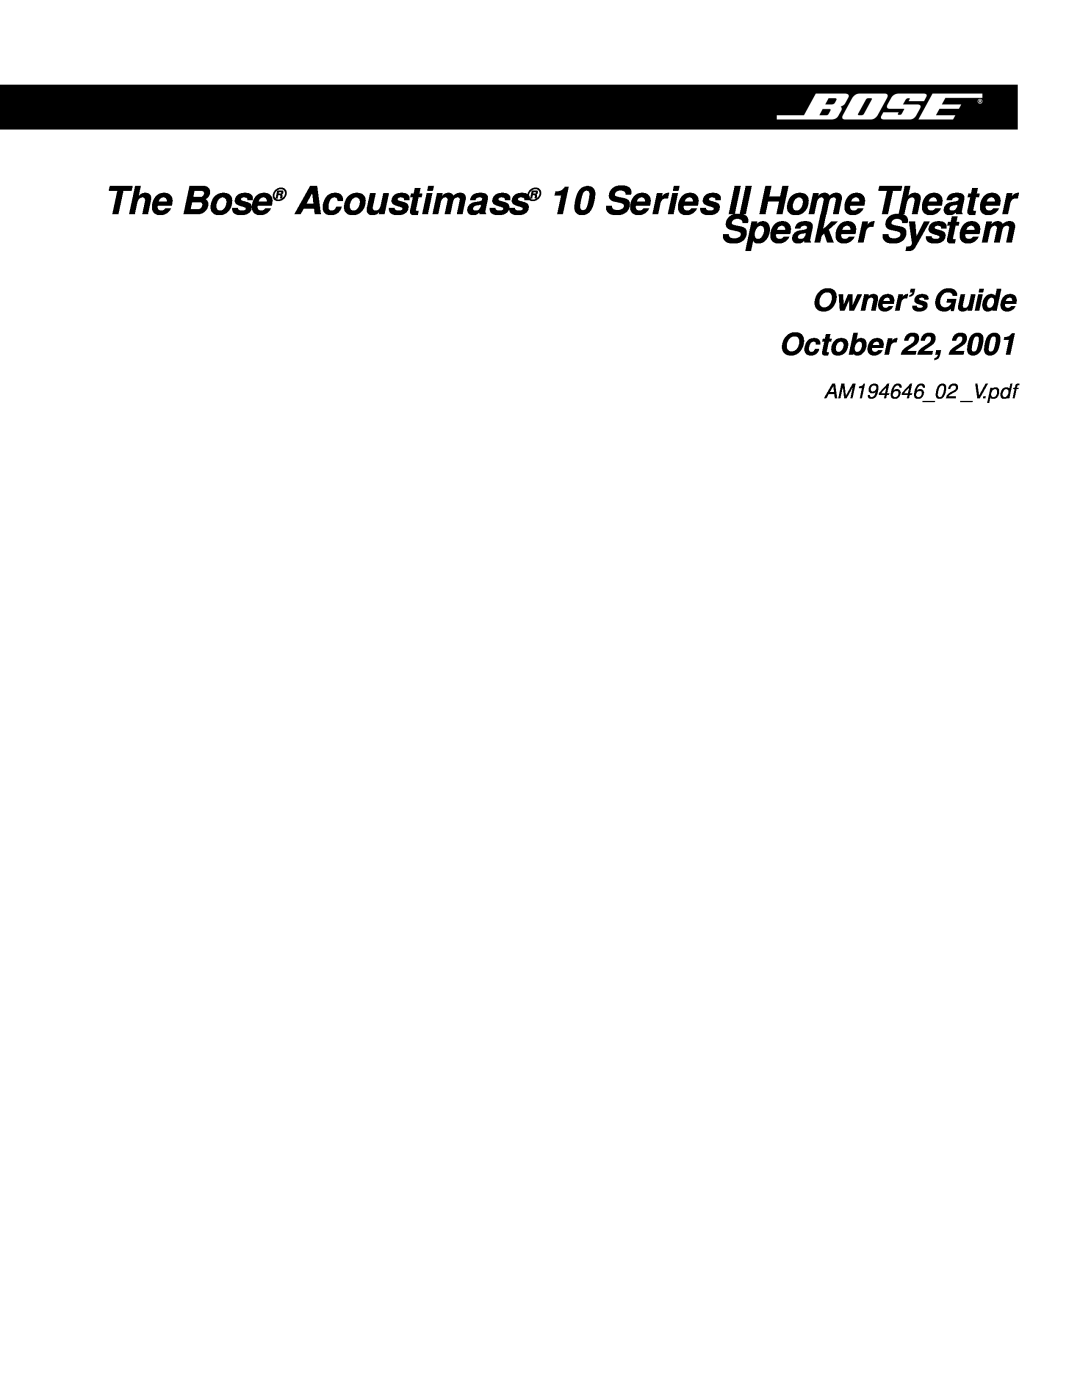 Bose 10 Series II manual Owner’s Guide October 